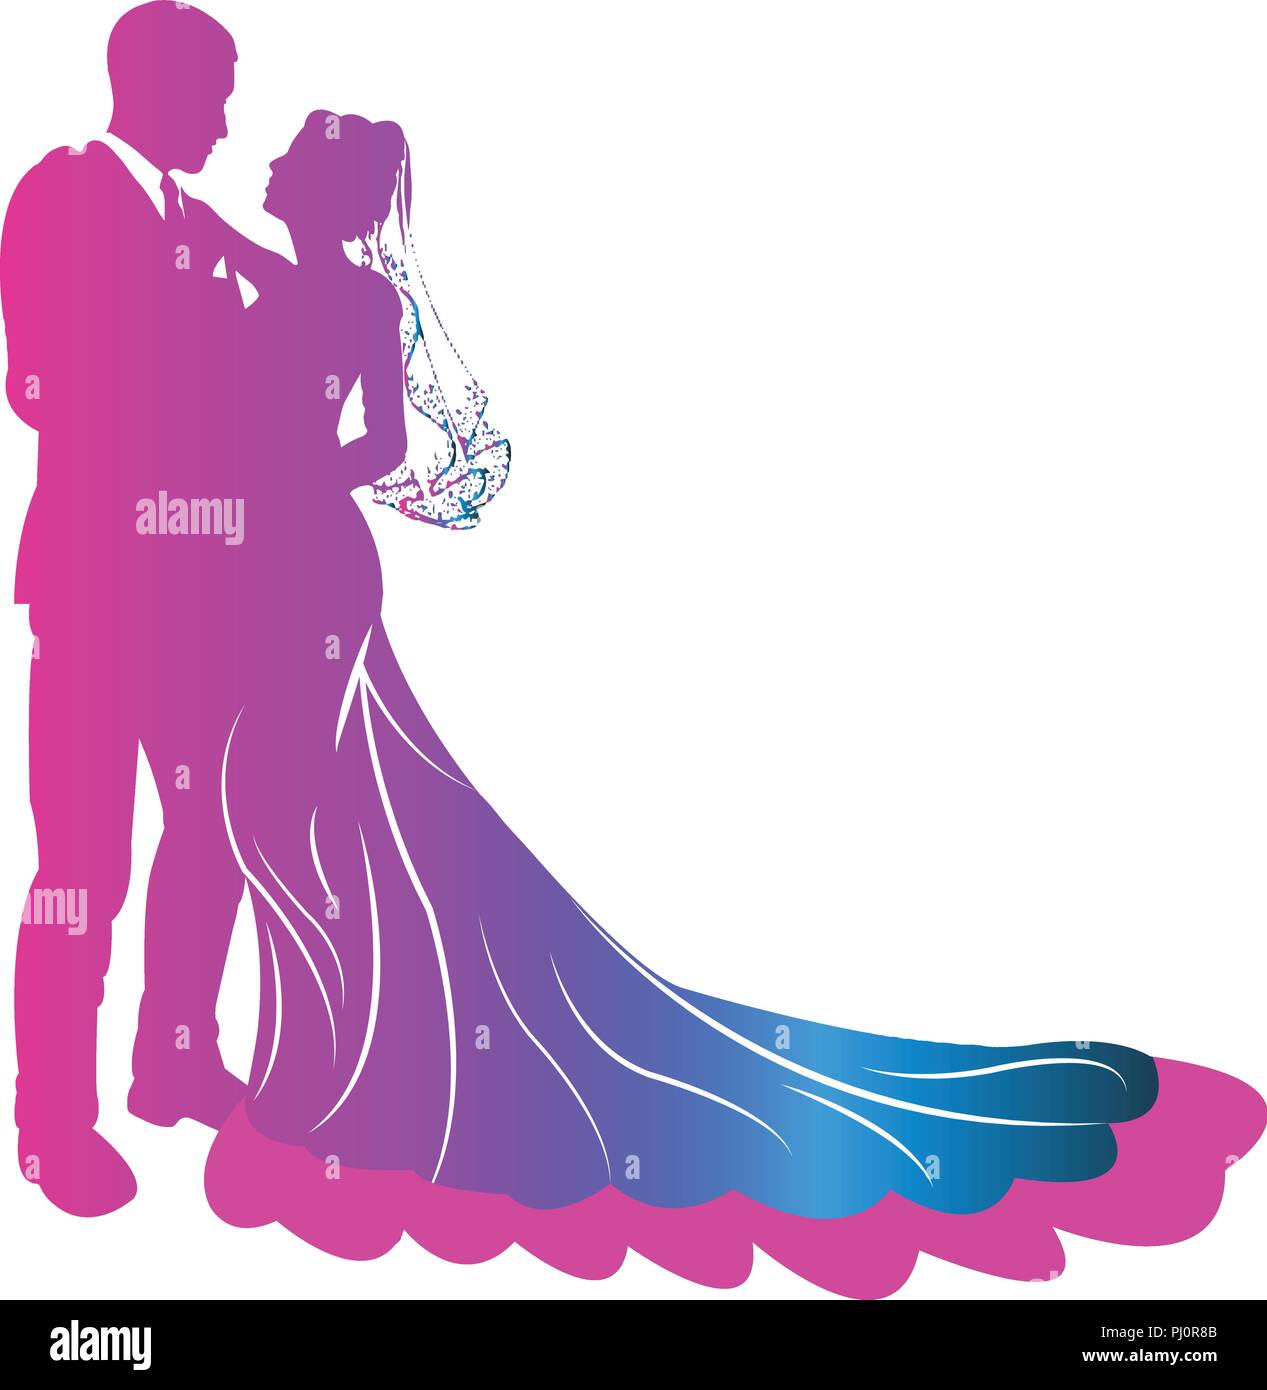 Un beau couple romantique clip-art de mariage Vous pouvez l'utiliser dans votre logo de mariage. C'est un vecteur libre de droits de Nirupam Brahma sous Alamy Illustration de Vecteur